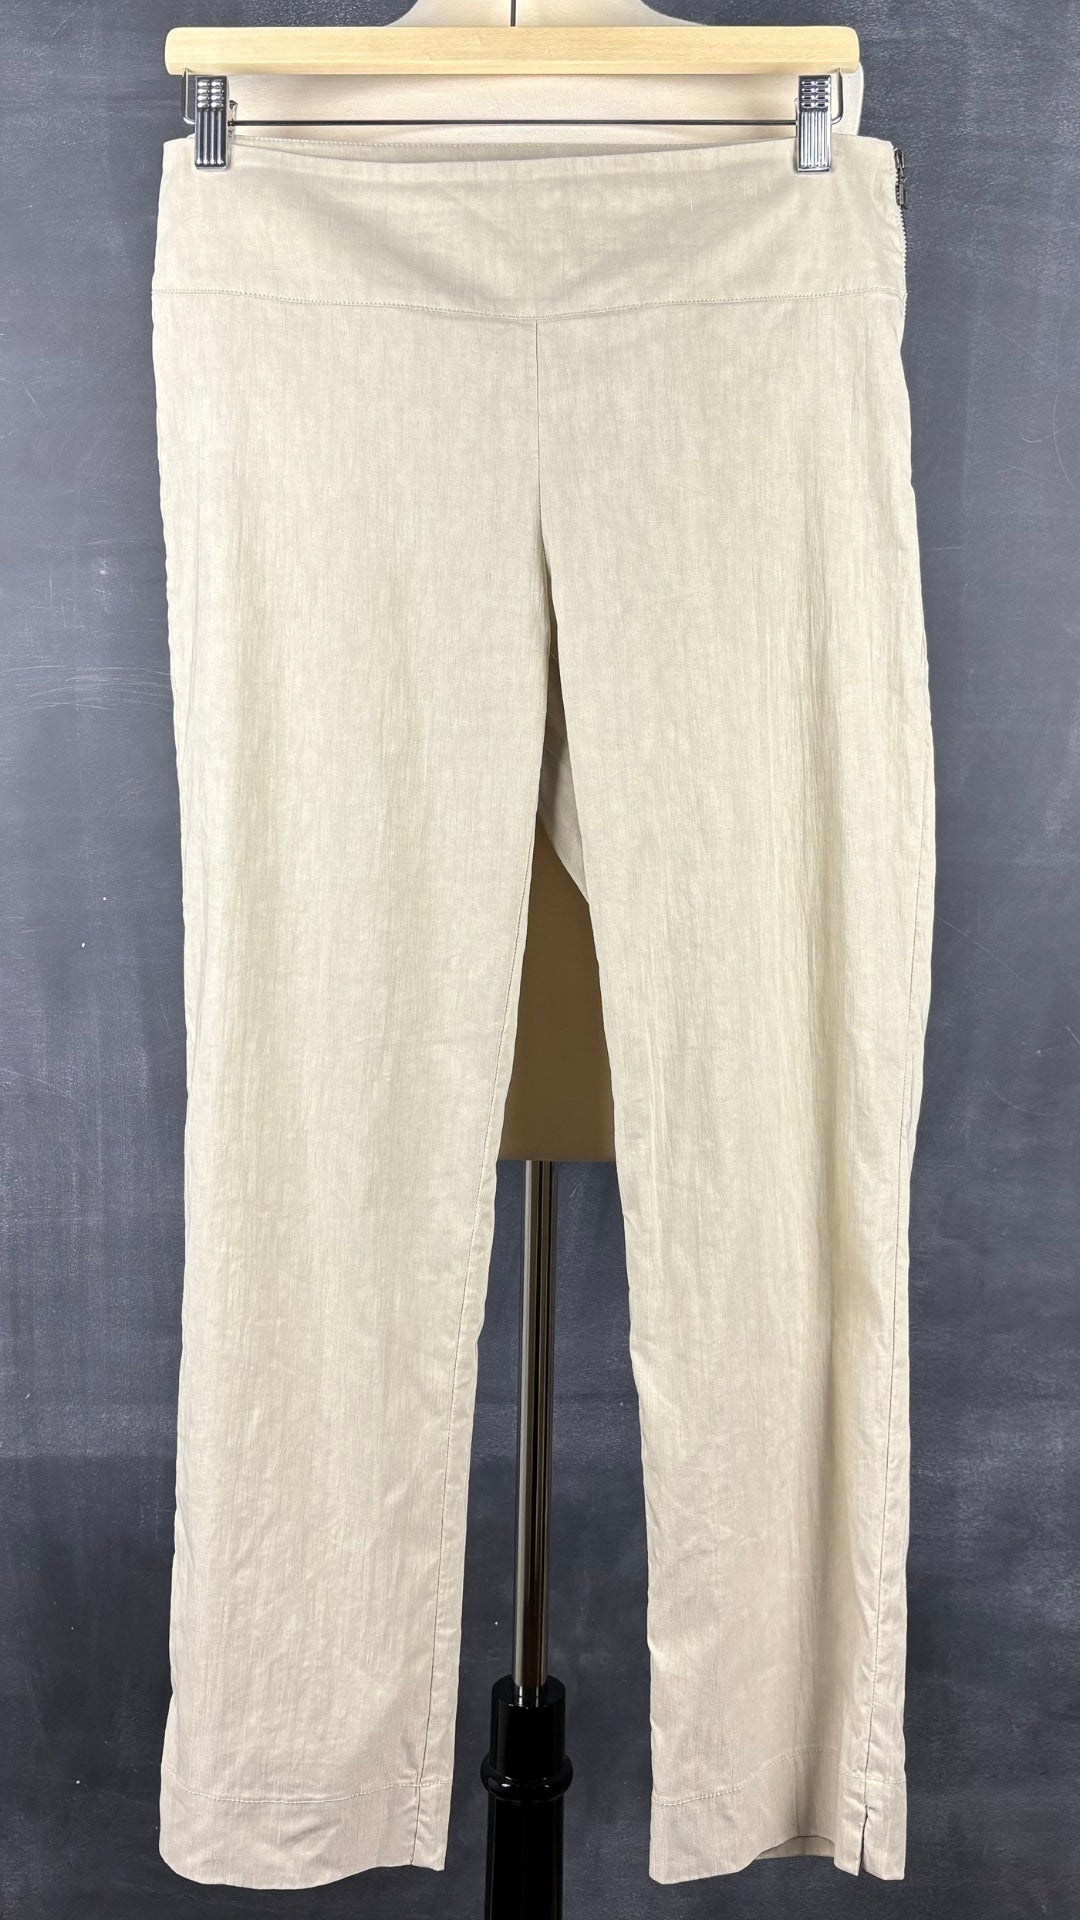 Pantalon beige en mélange de lin Sarah Pacini, taille 2 (m). Vue de face.